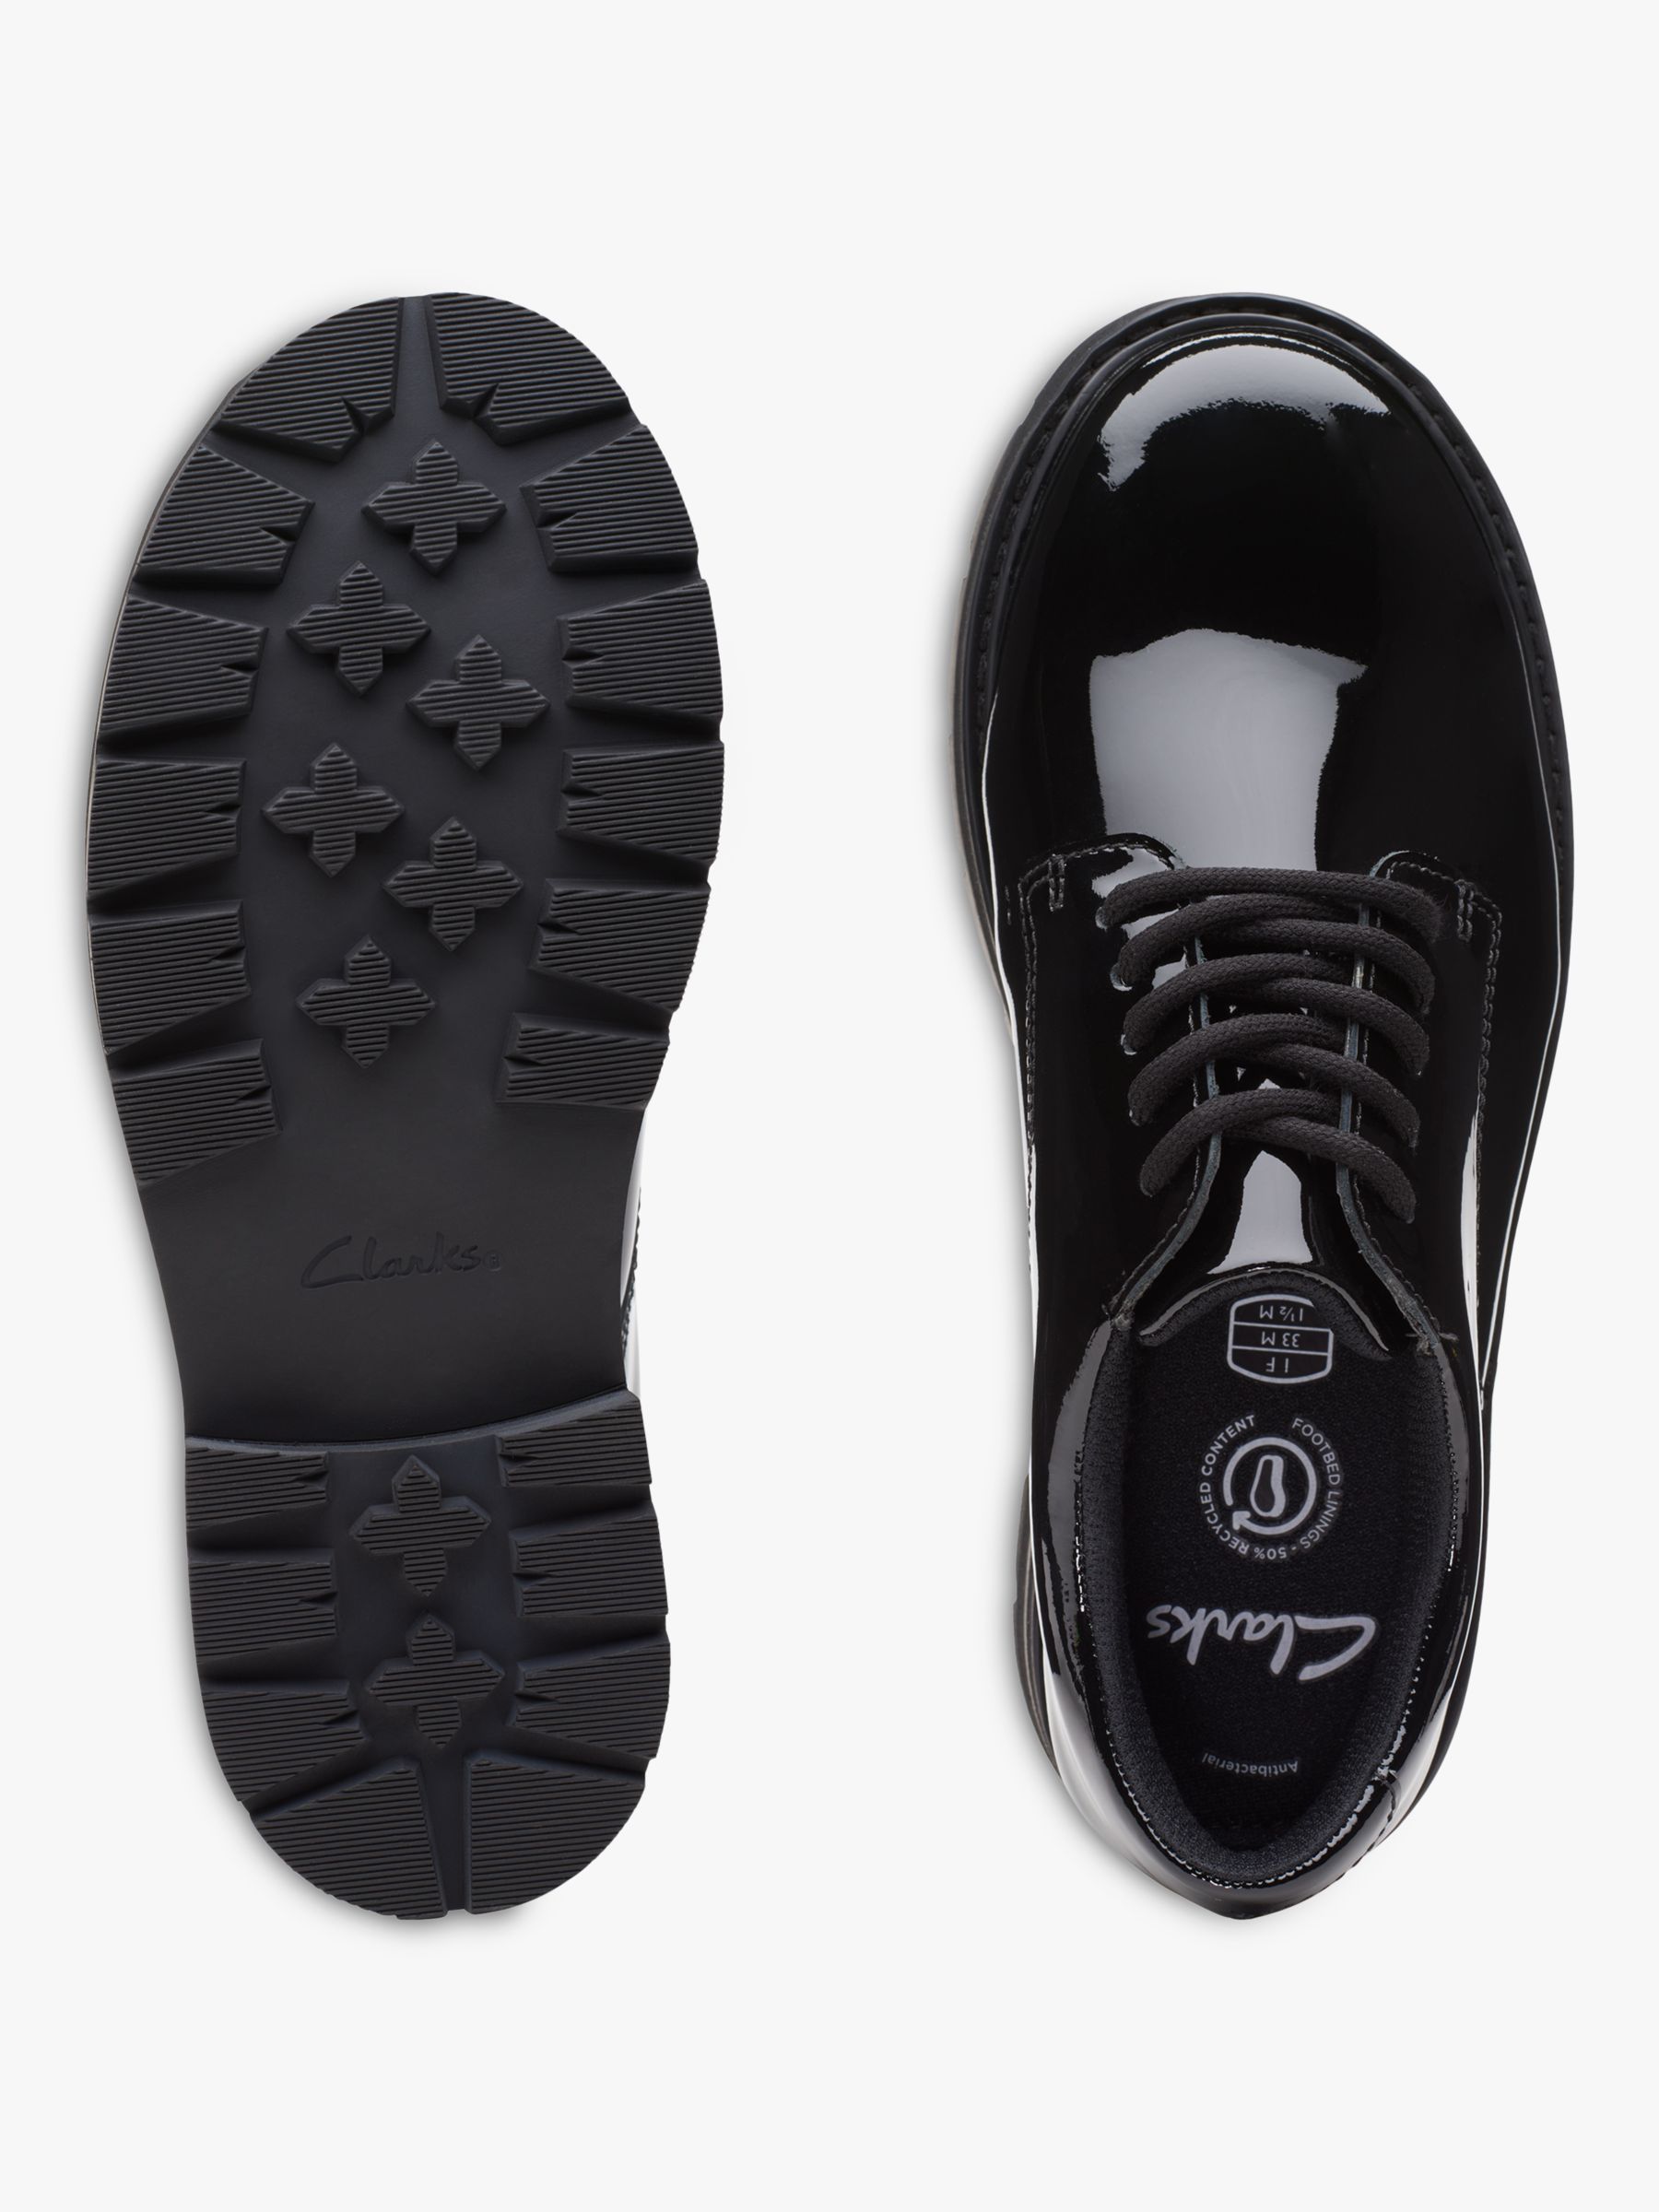 Clarks Kids' Prague Lace Up Patent Leather School Shoes, Black, 3F